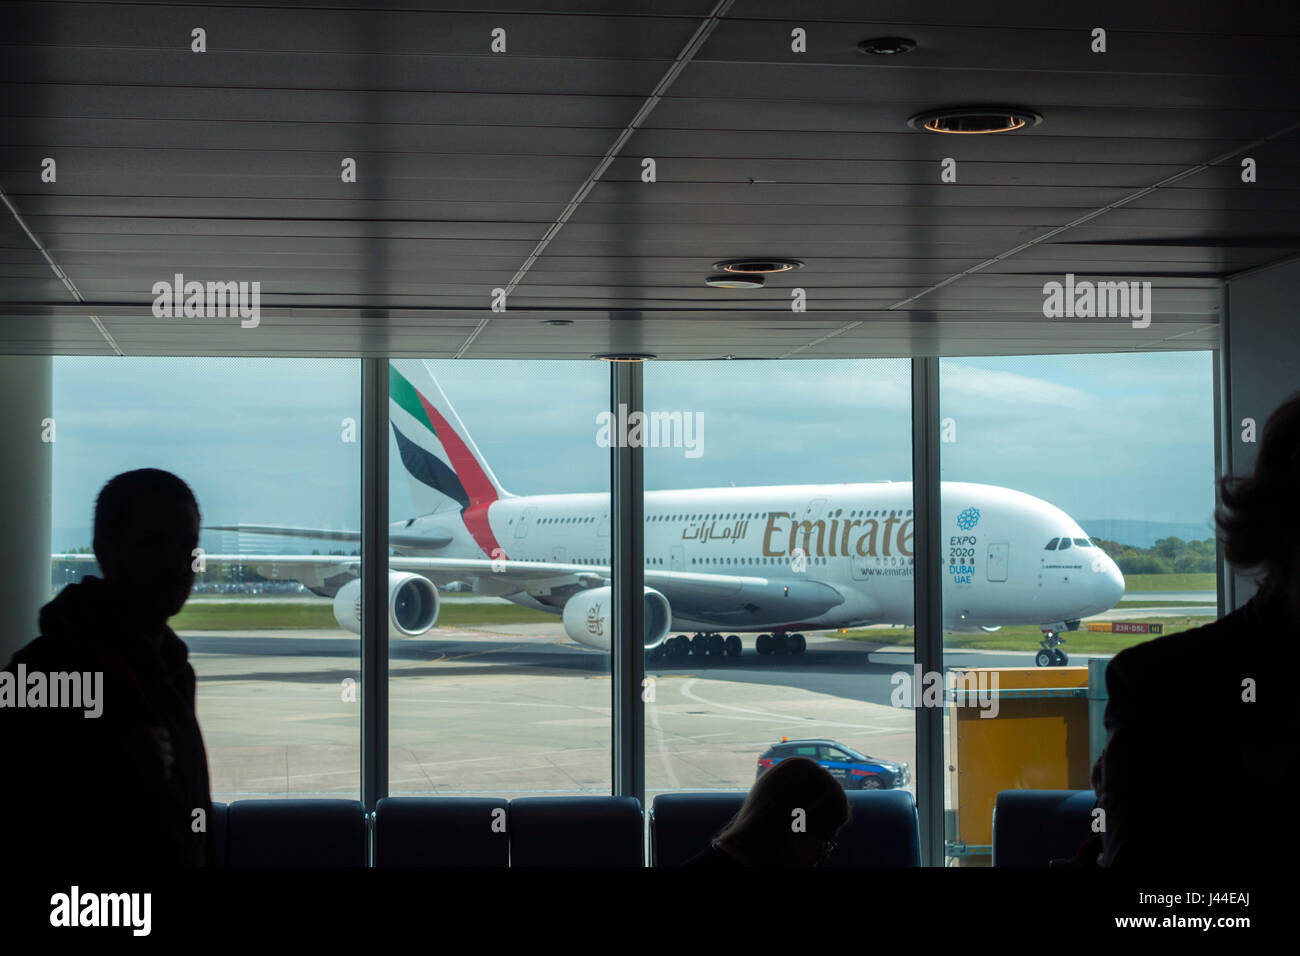 Airbus A380 Emirates arrivant à l'aéroport de Manchester vu à travers la fenêtre de salon Banque D'Images